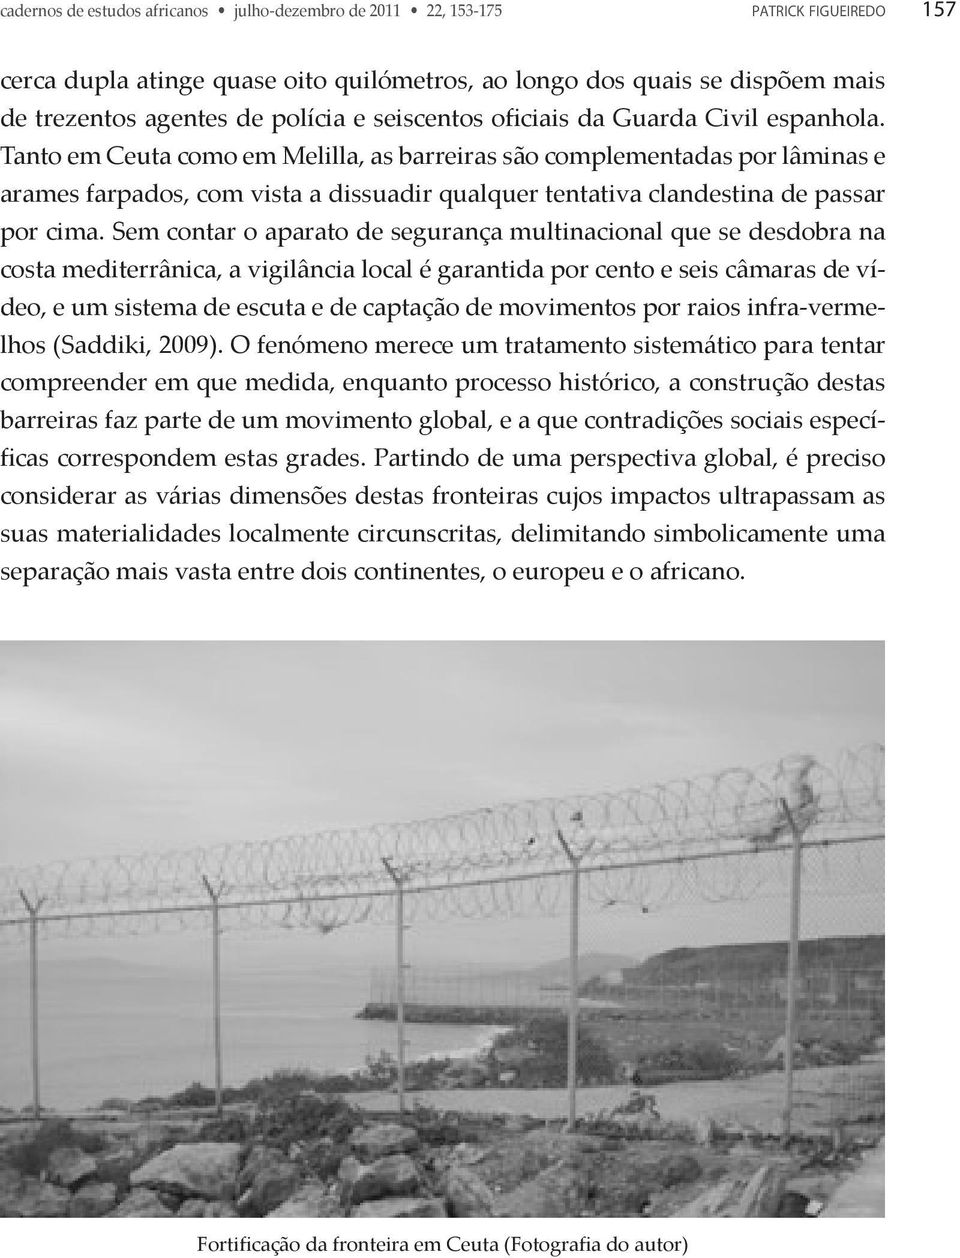 Tanto em Ceuta como em Melilla, as barreiras são complementadas por lâminas e arames farpados, com vista a dissuadir qualquer tentativa clandestina de passar por cima.